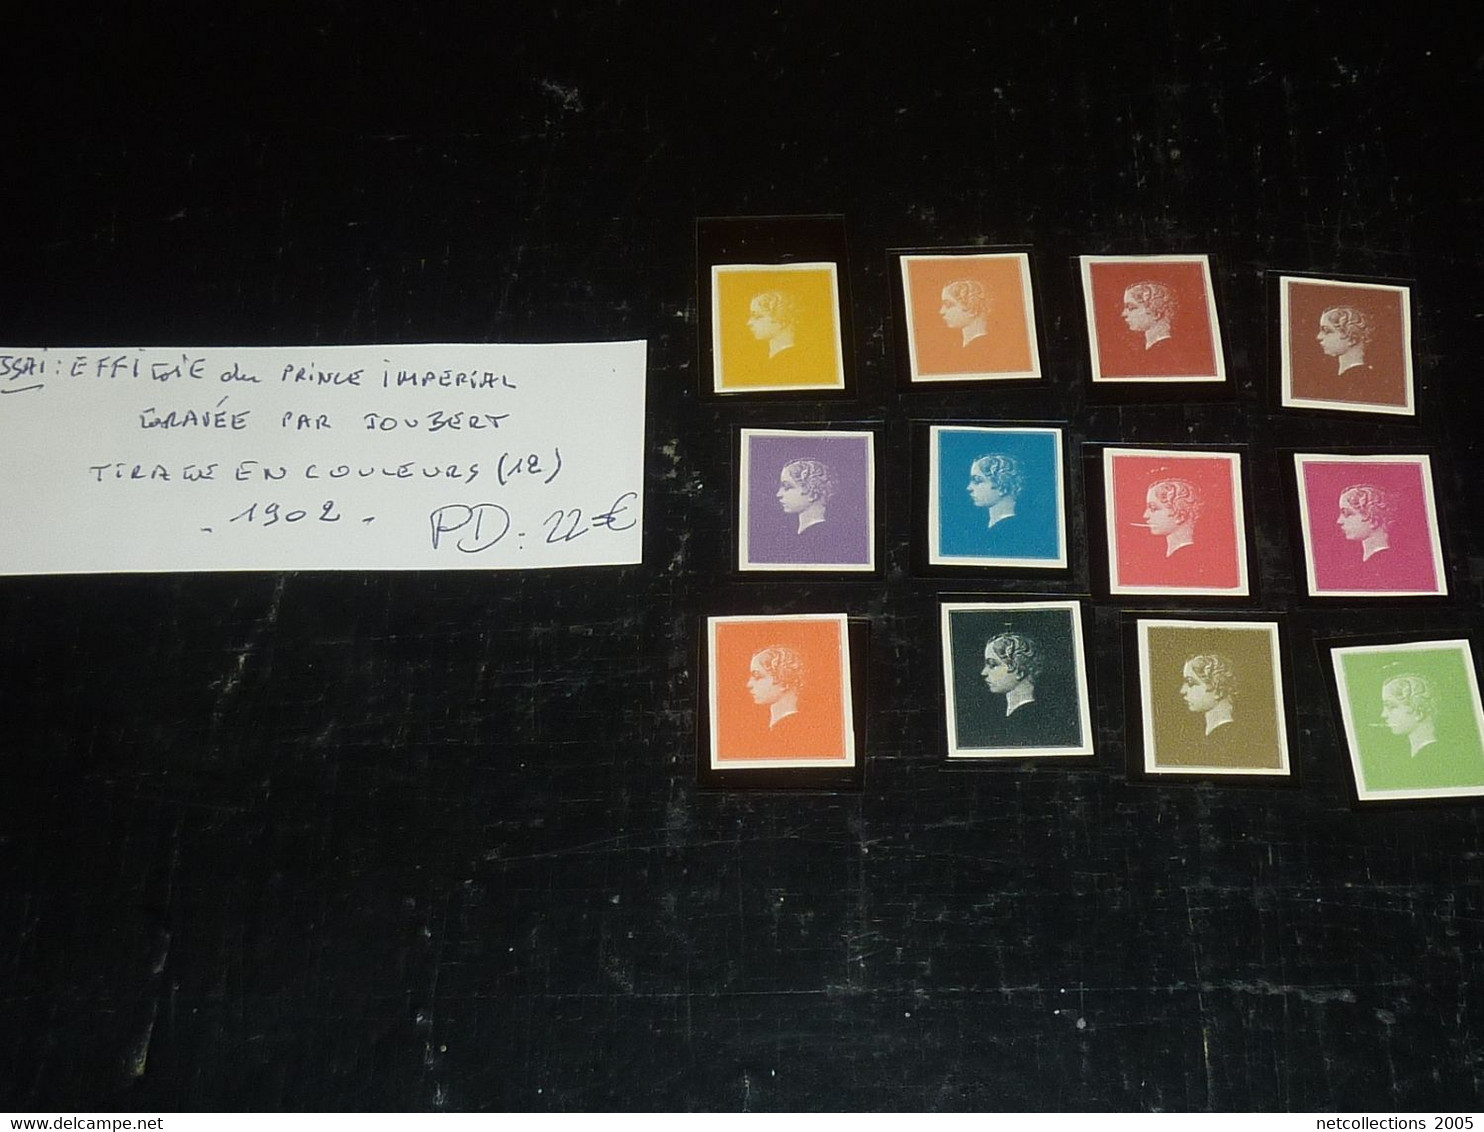 TIMBRE POSTE DE FRANCE - ESSAI EFFIGIE DU PRINCE IMPERIAL GRAVEE PAR JOUBERT SERIE DE 12 TIMBRES AVEC CHARNIERES (C.V) - Color Proofs 1900-1944